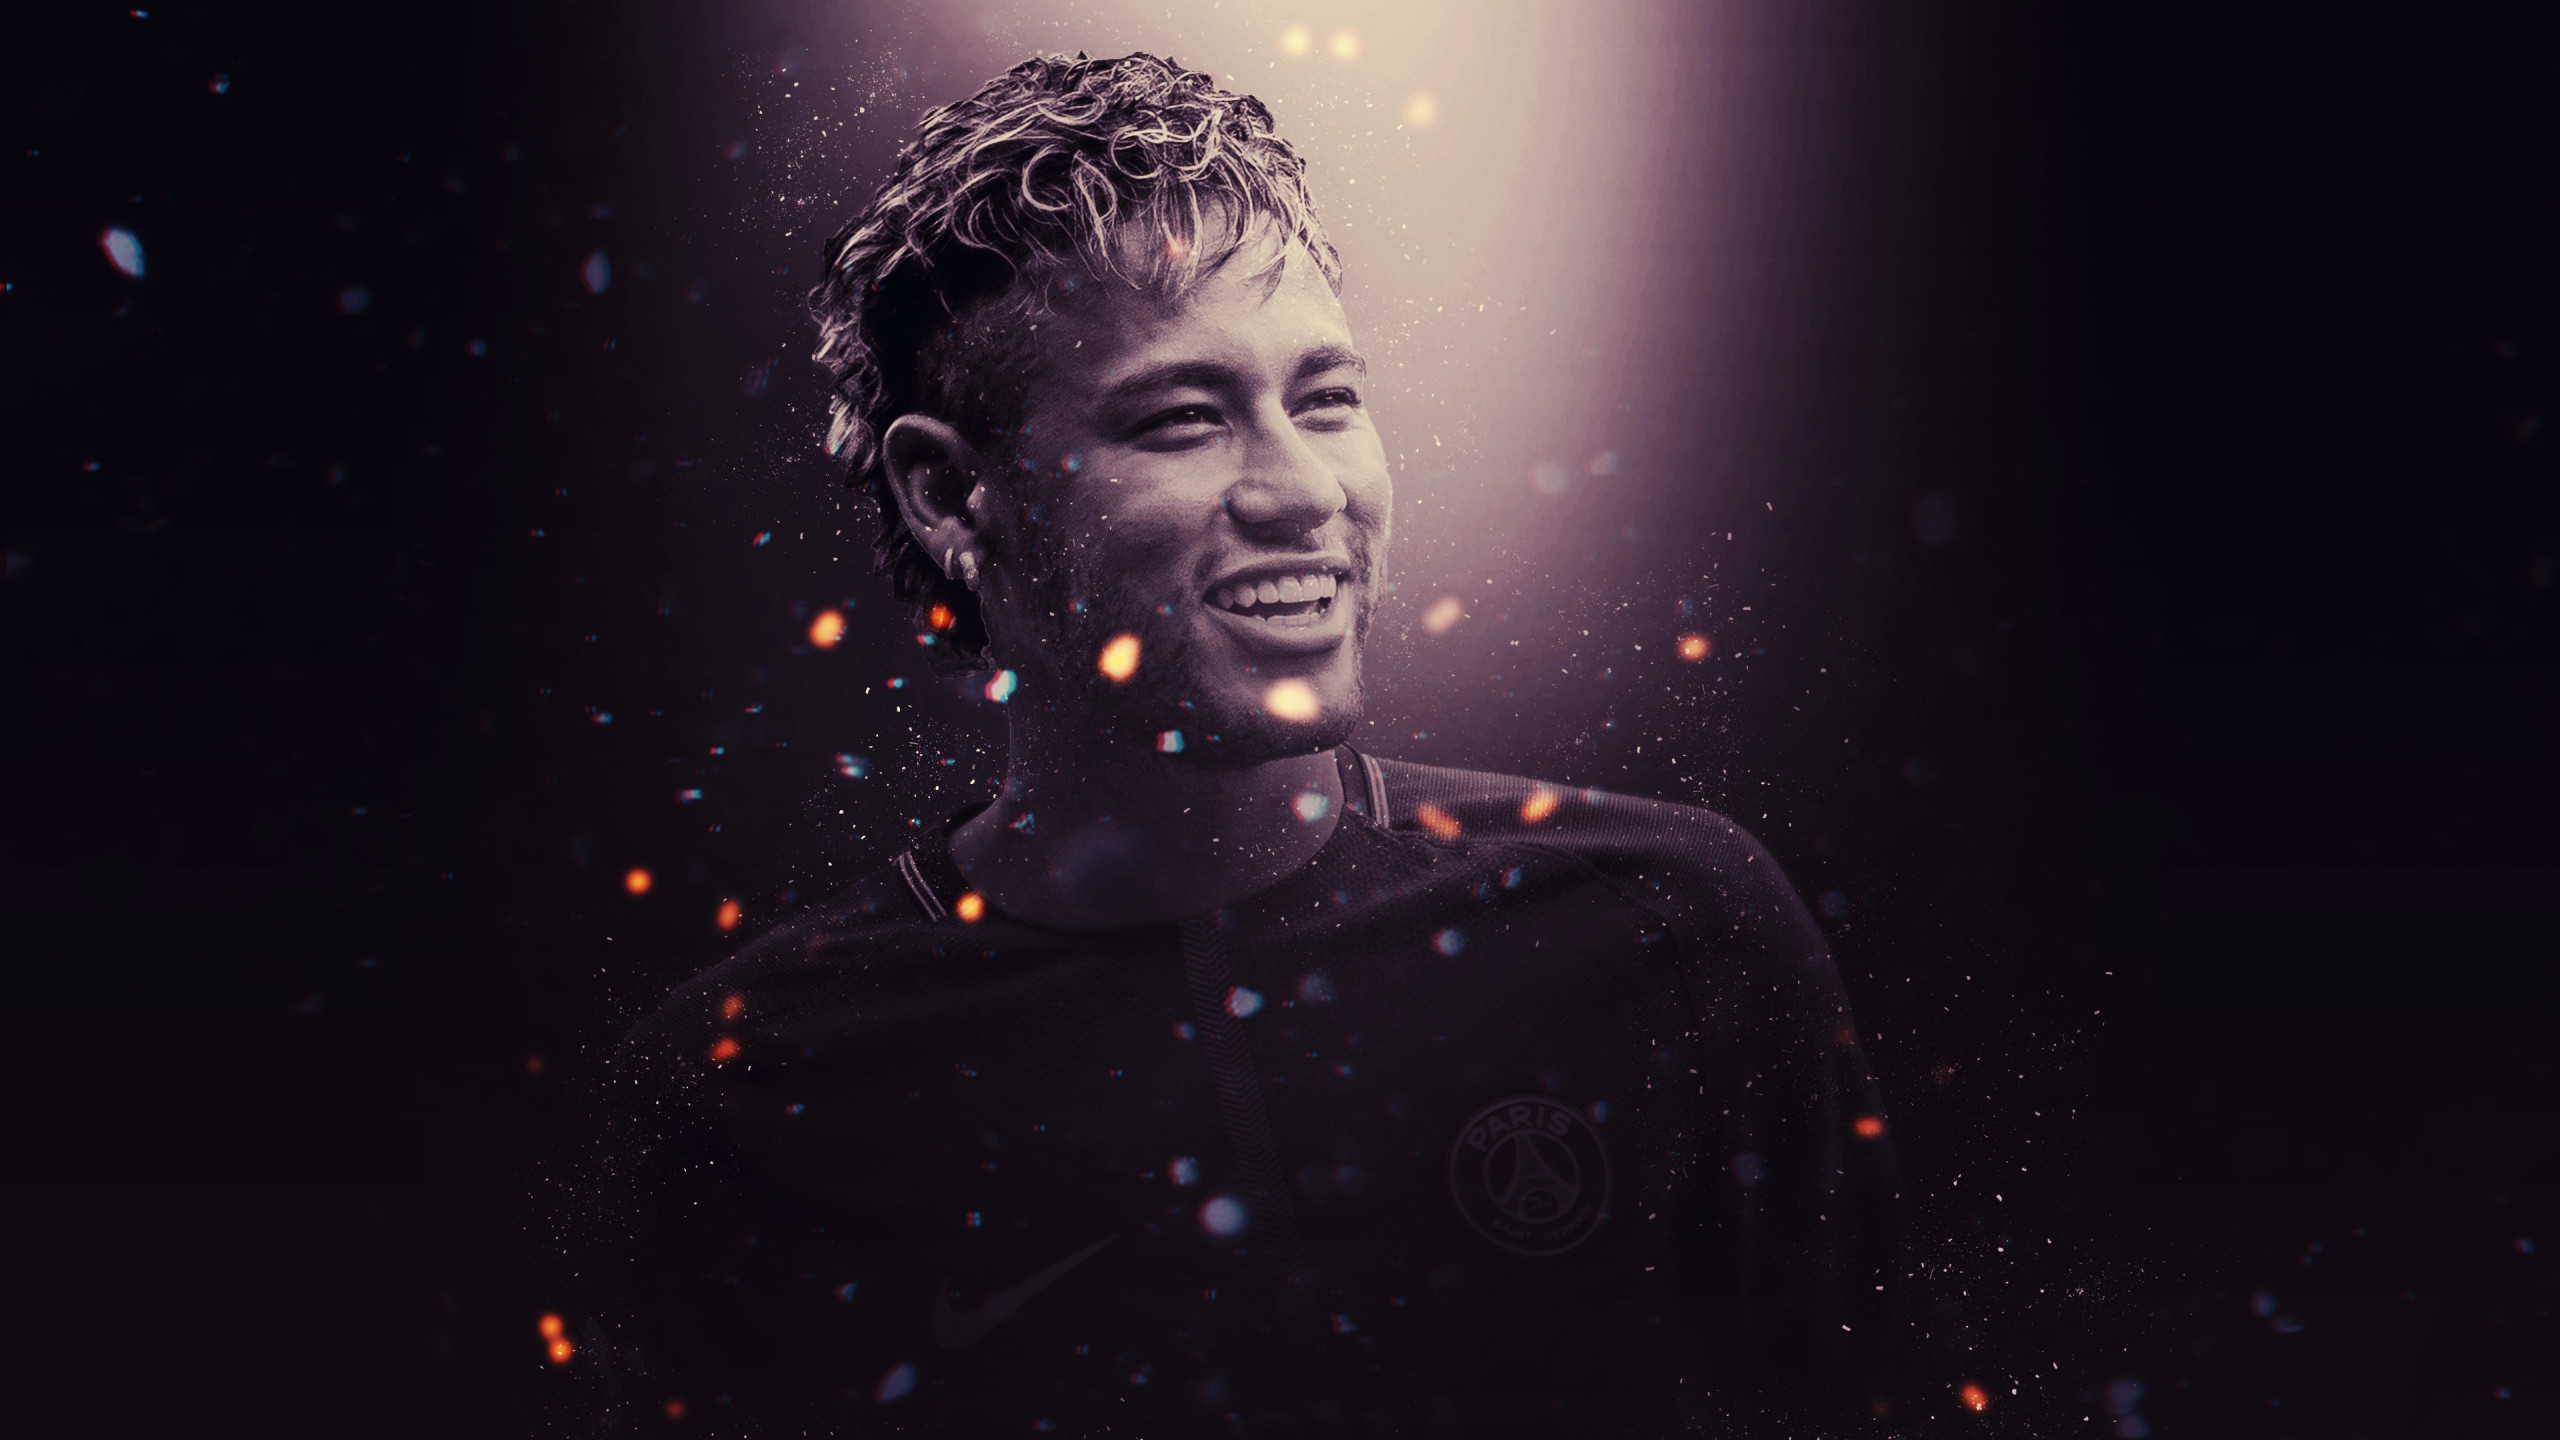 Neymar for PSG wallpaper 2560x1440